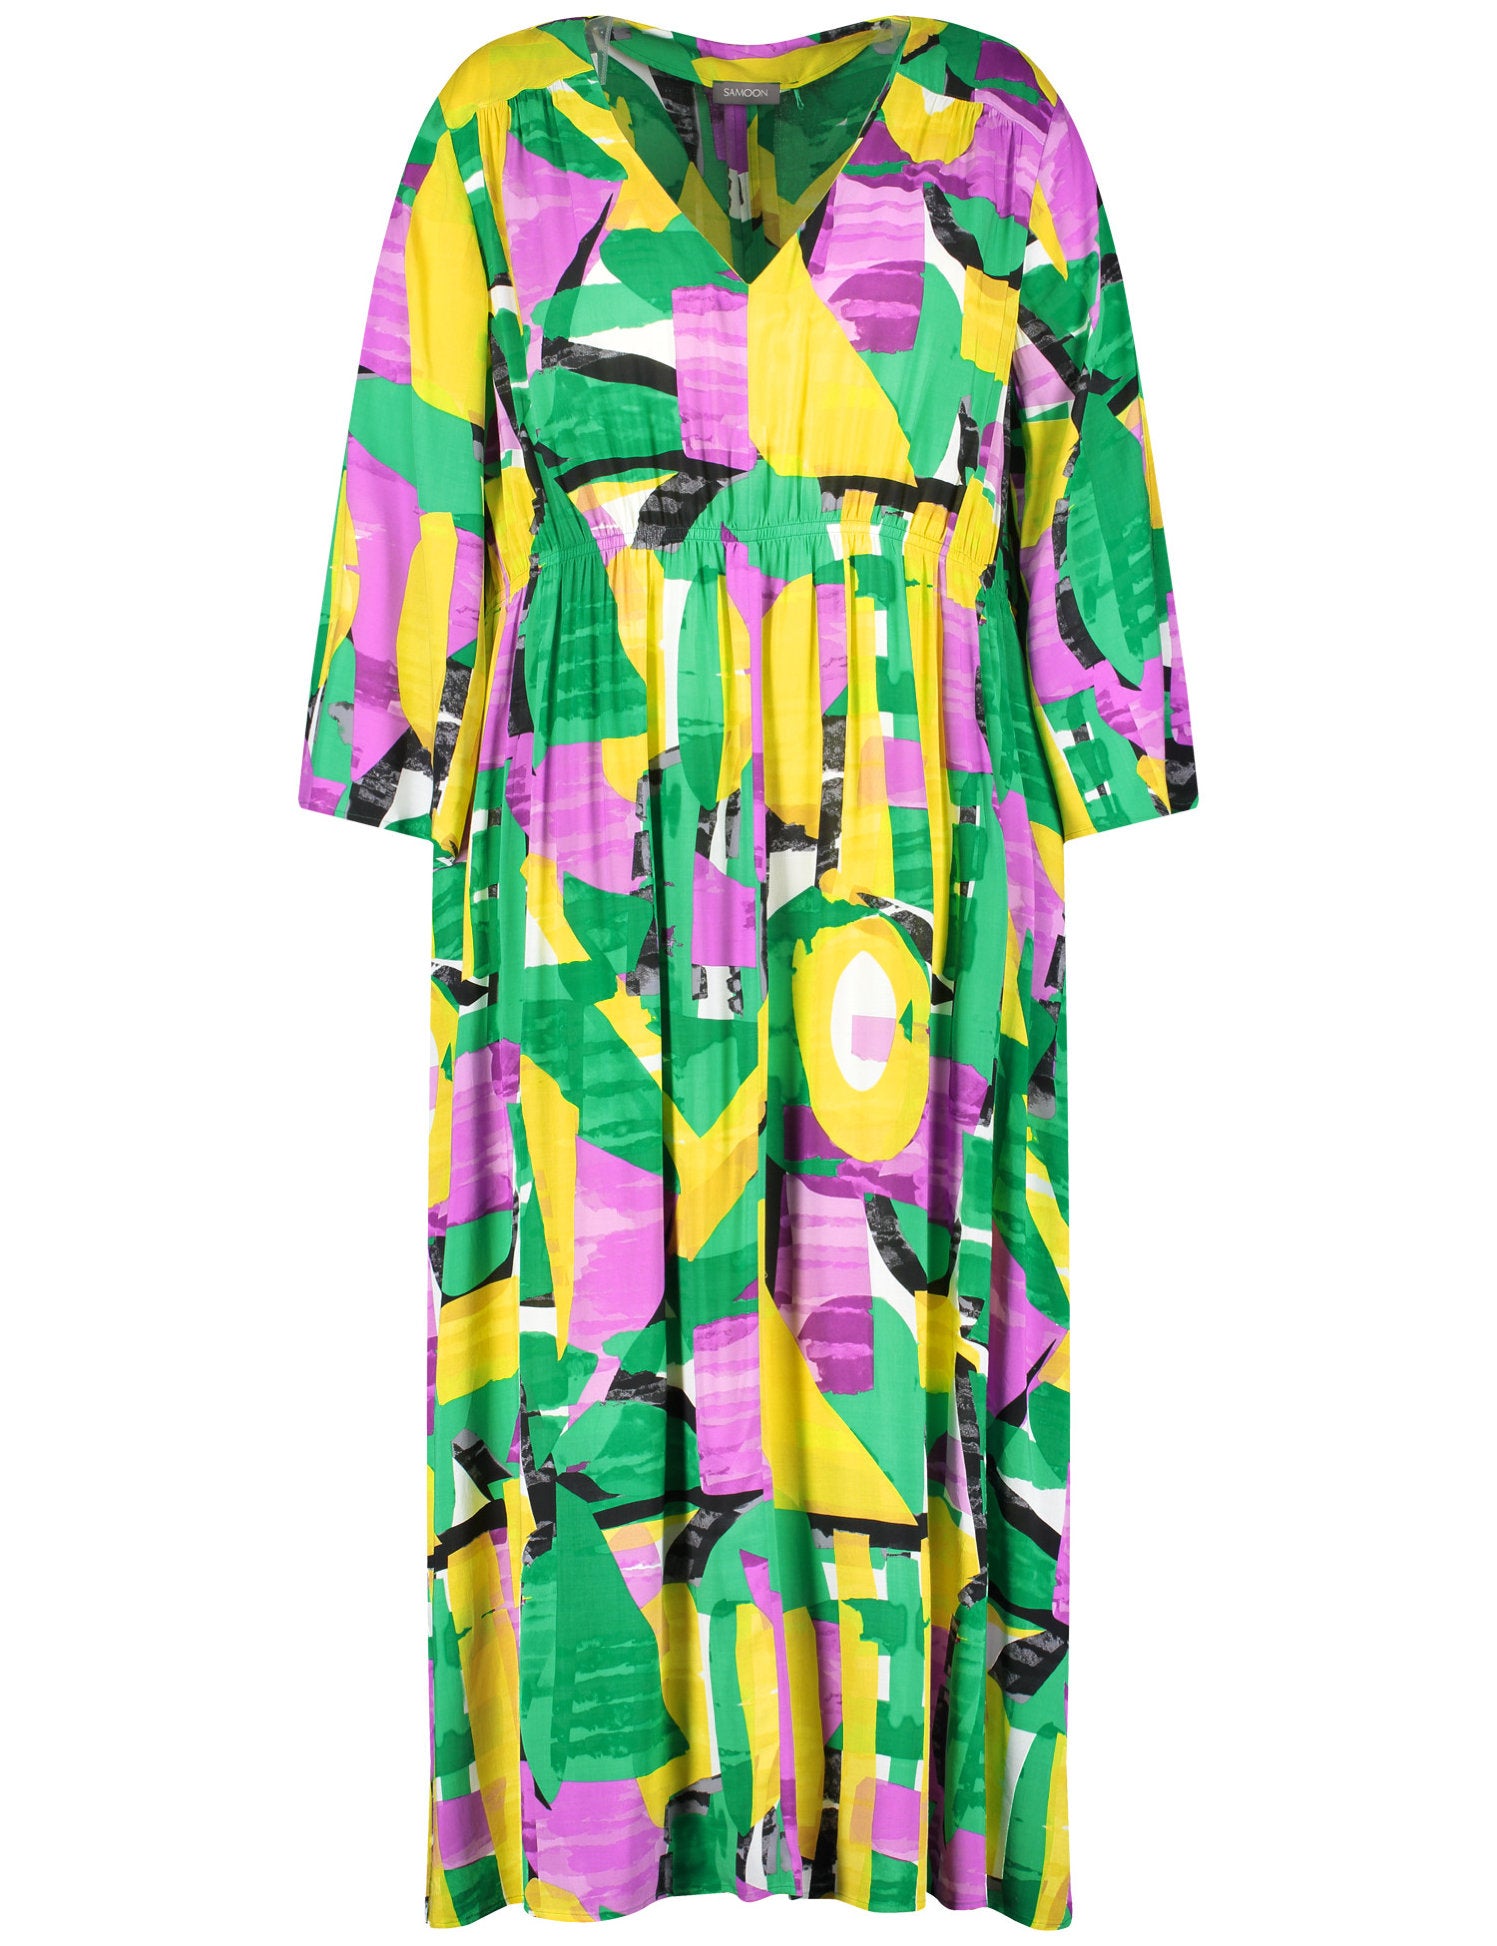 Boho Dress With A Colourful Print_480024-21064_5602_06